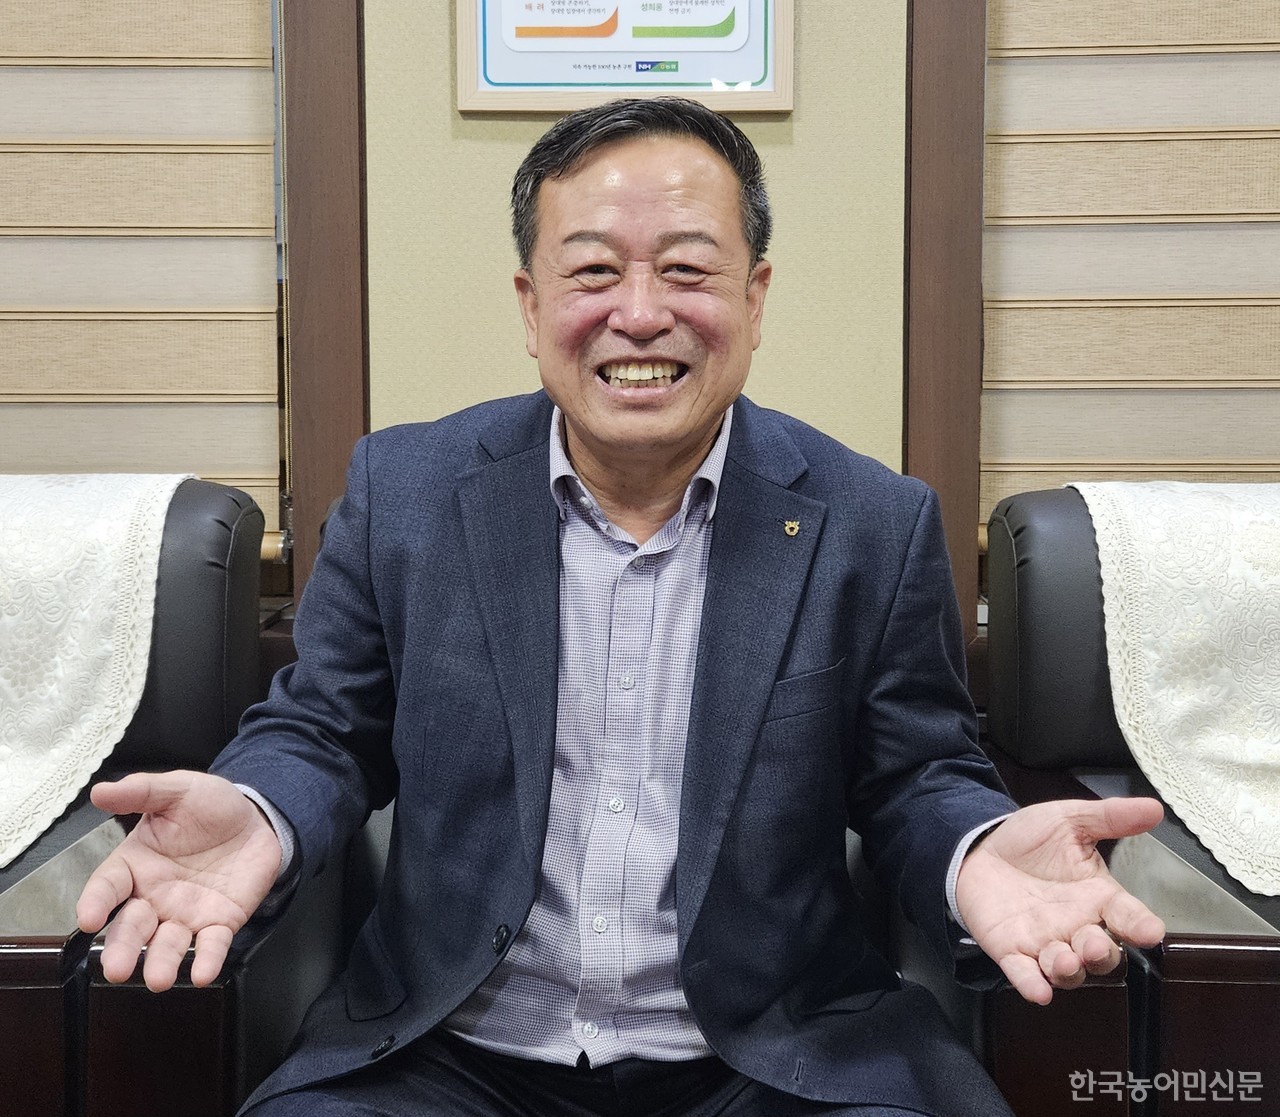 박노춘(64) 예산중앙농협조합장은 농협의 존재 이유를 강조하며 농민을 향한 애정을 표했다.